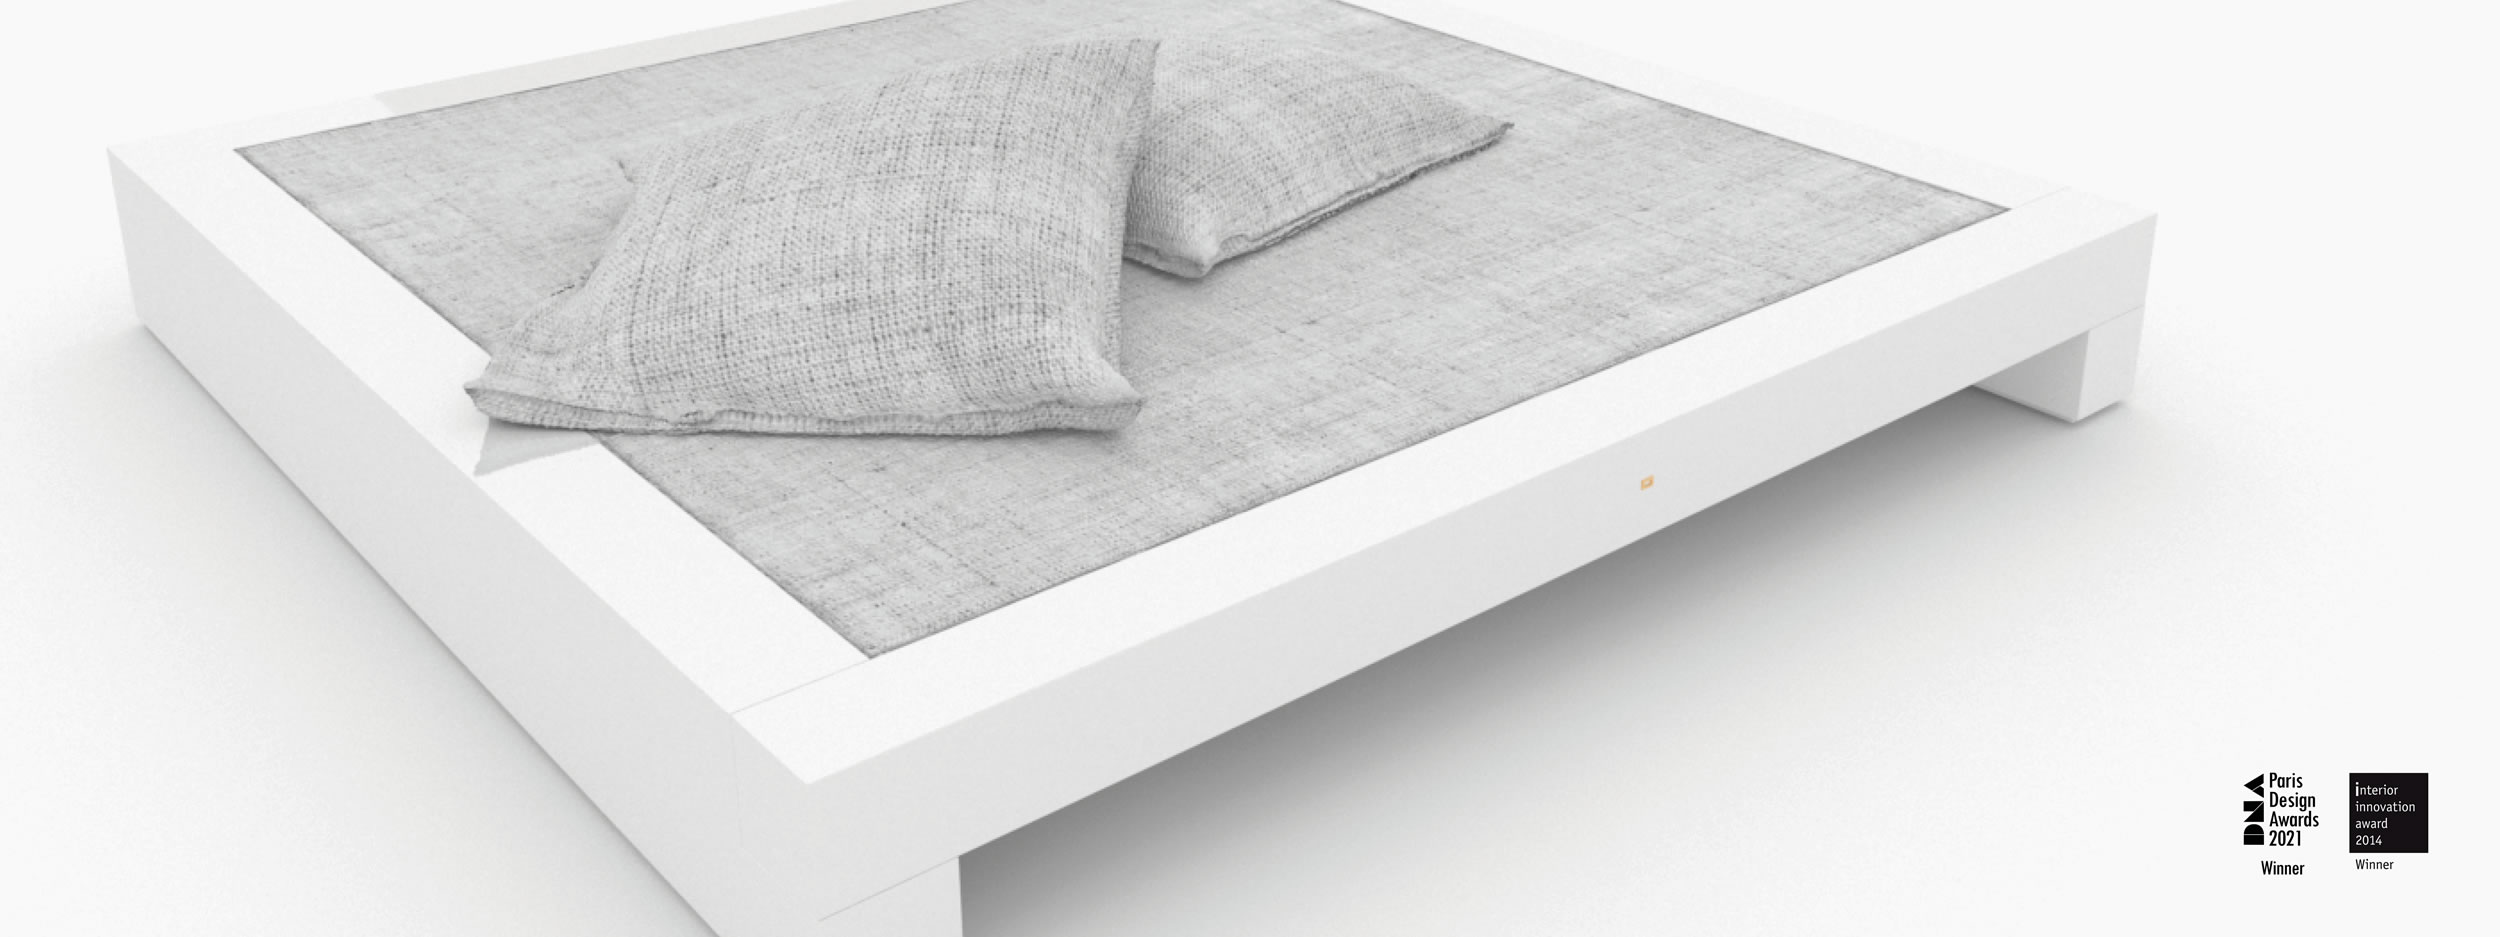 Bett flach weiss interiorstyle Schlafzimmer object design Betten FS 3 FELIX SCHWAKE RECHTECK